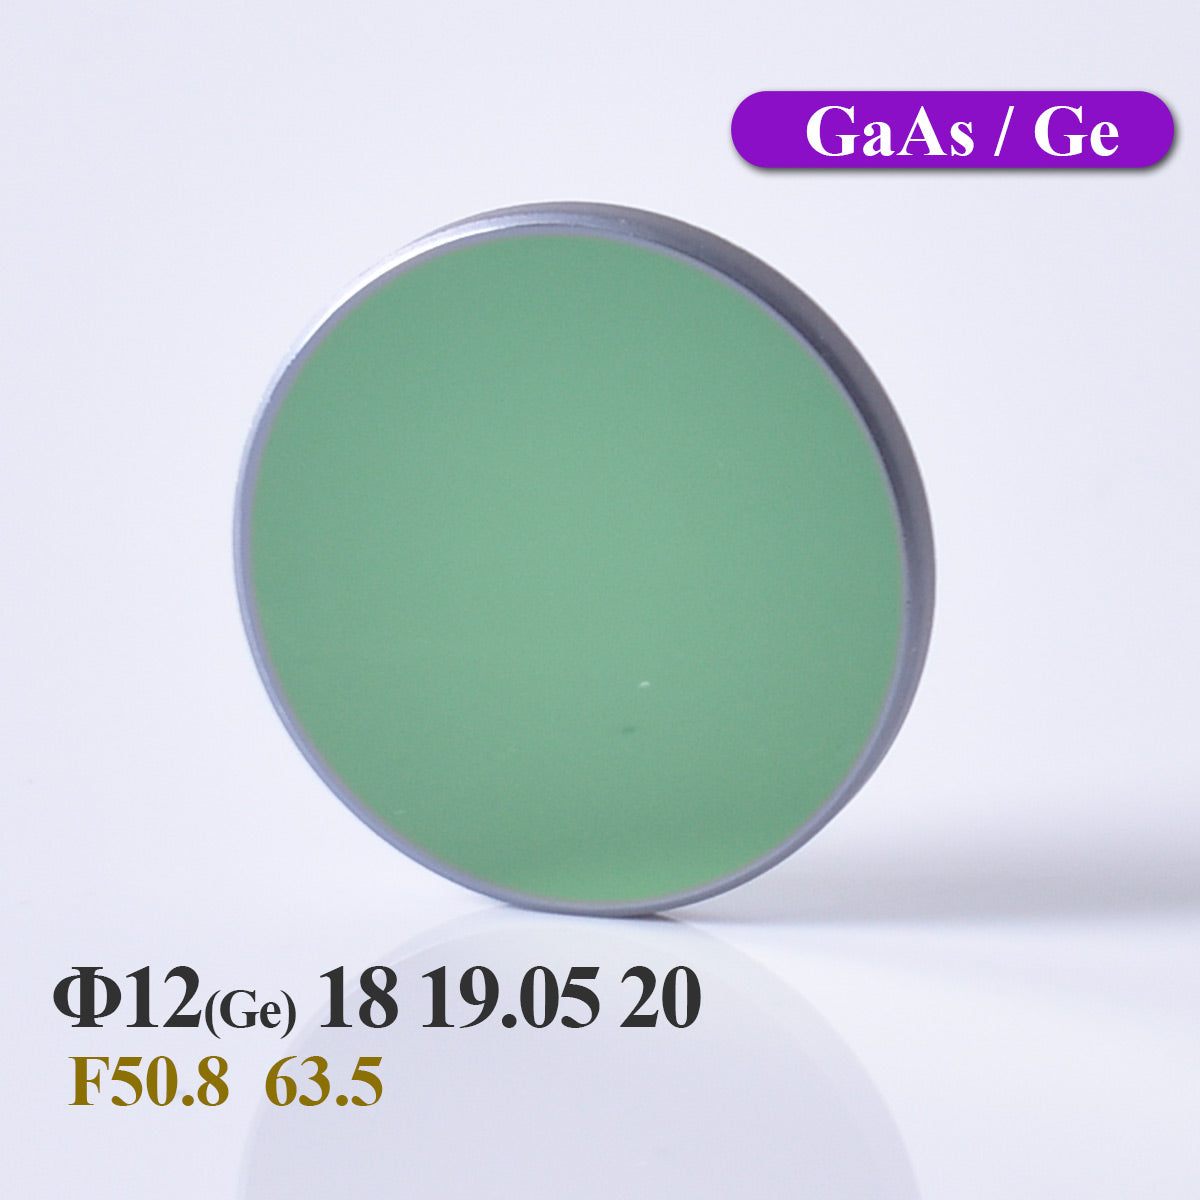 Startnow CO2 Laser Focus Lens Ge12 For 40W Laser Engraver Machine 18 19.05 20 GaAs Laser Lenses